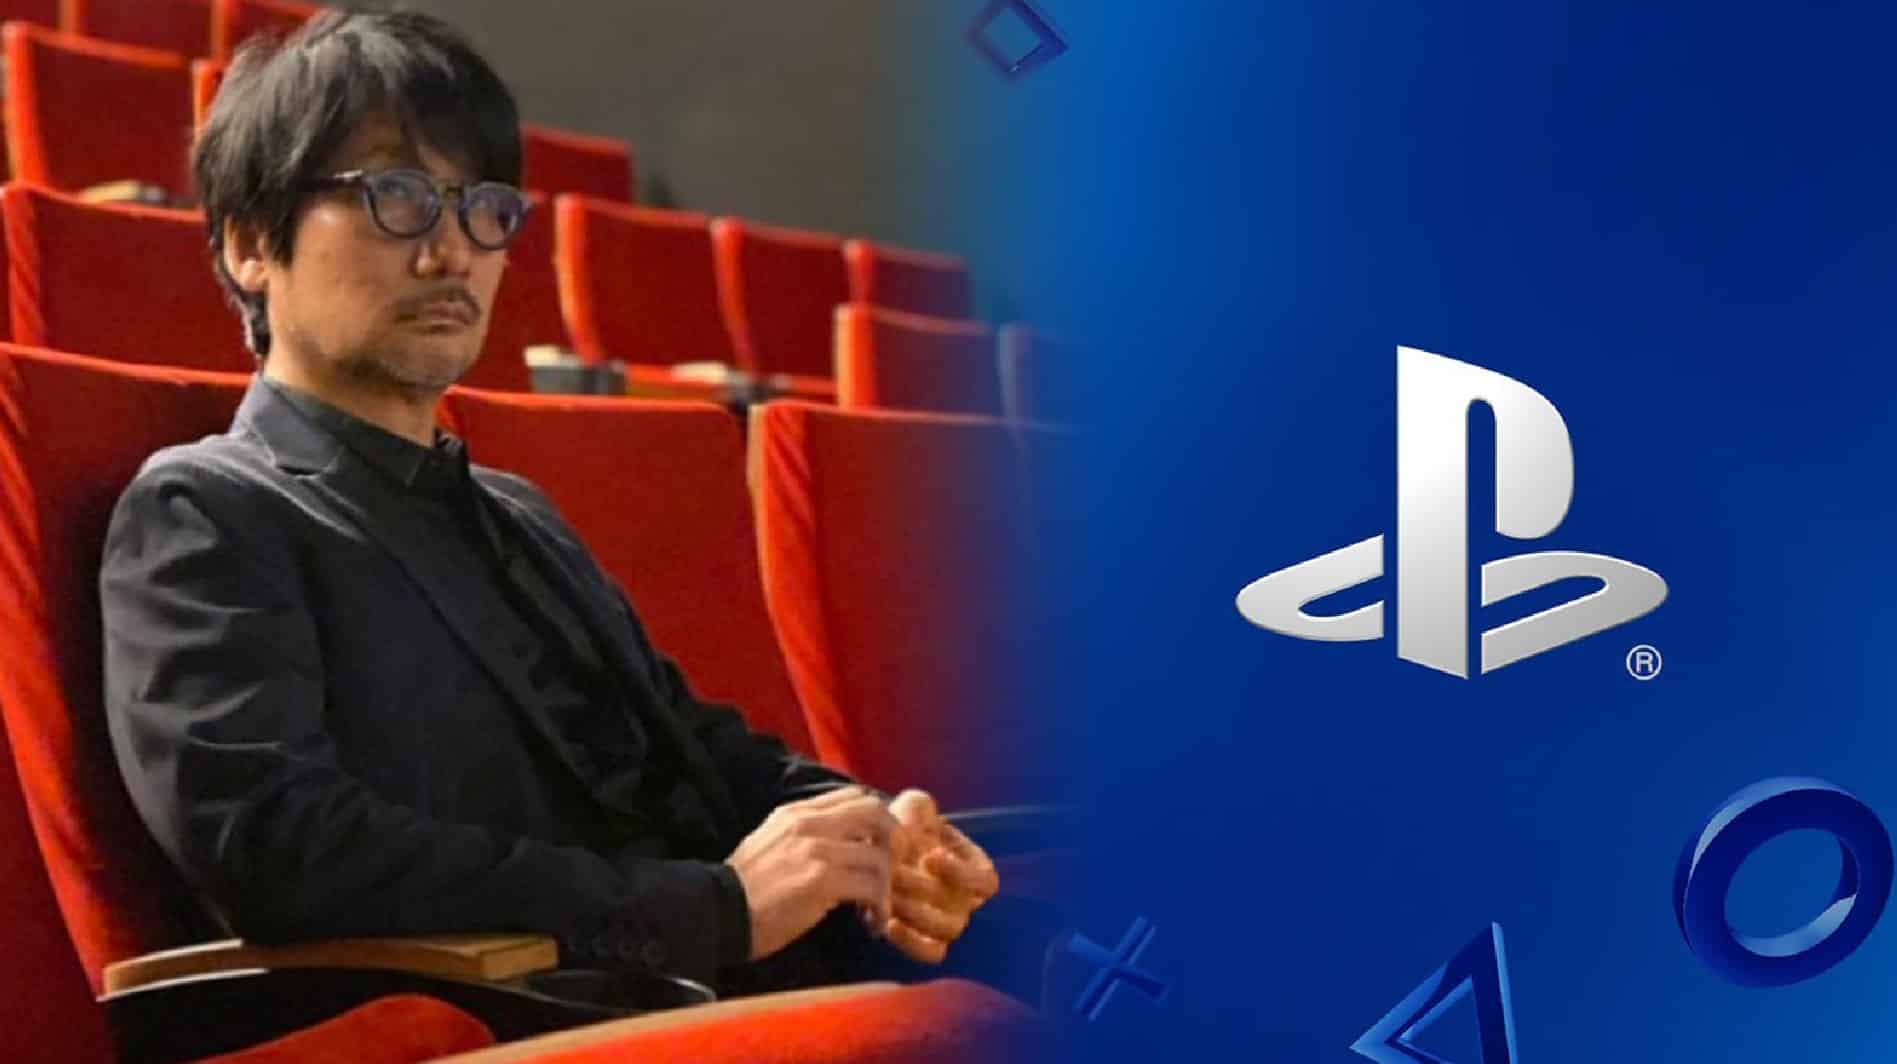 Hideo Kojima next to PlayStation logo